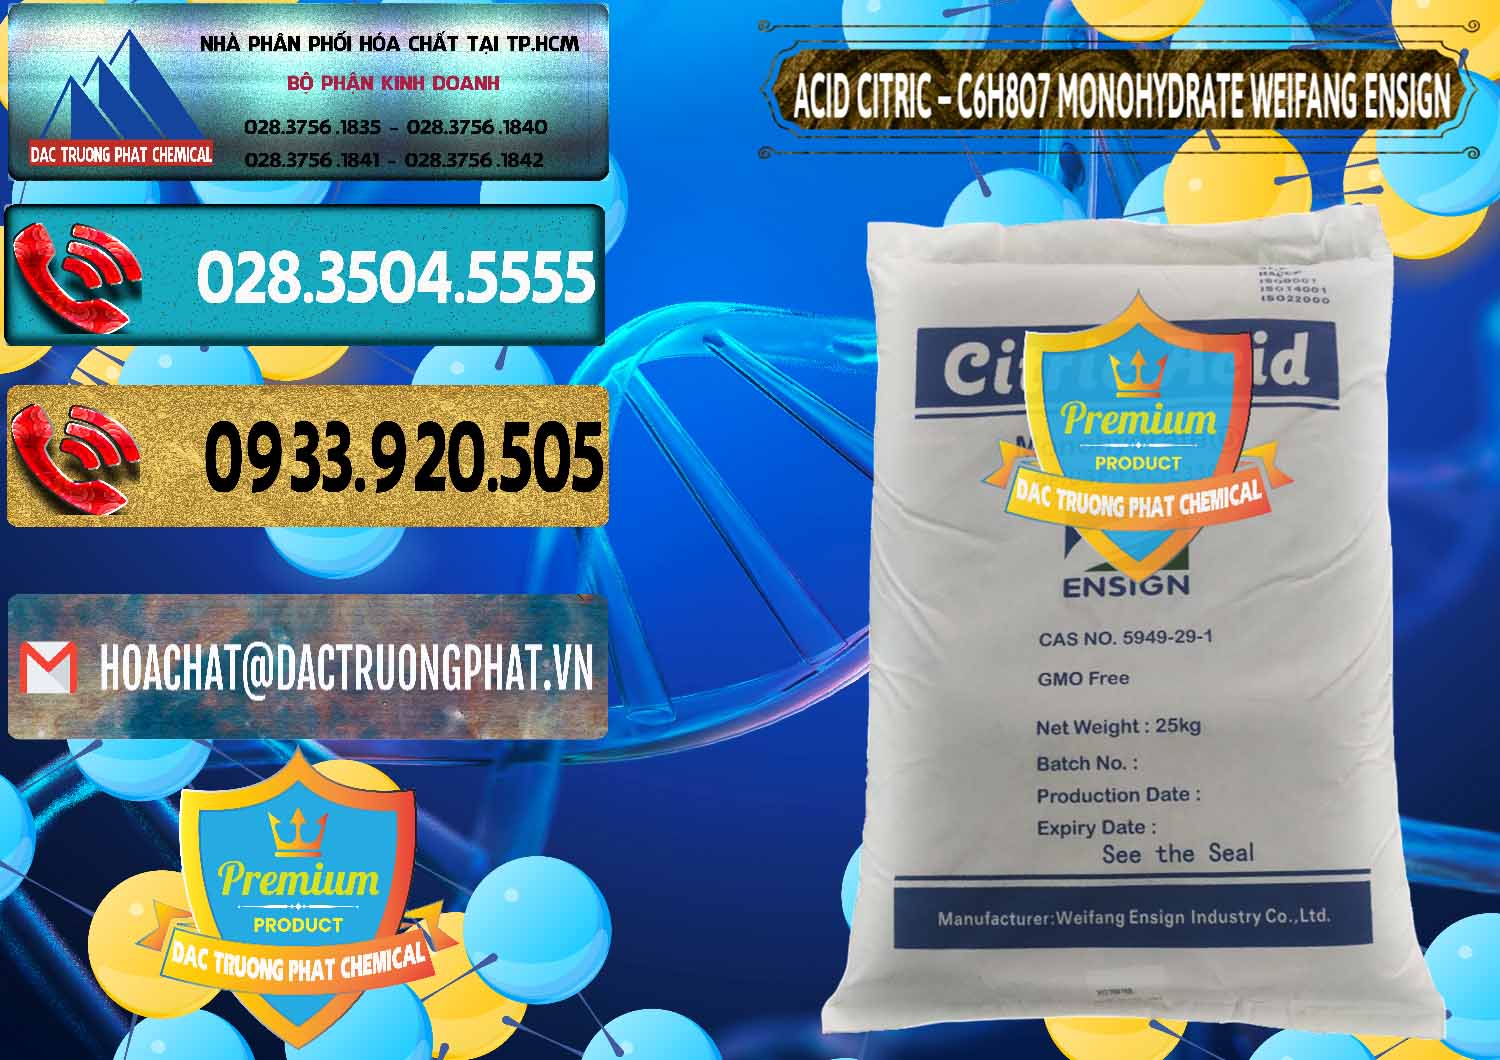 Nơi chuyên nhập khẩu - bán Acid Citric - Axit Citric Monohydrate Weifang Trung Quốc China - 0009 - Cty chuyên cung cấp - bán hóa chất tại TP.HCM - hoachatdetnhuom.com